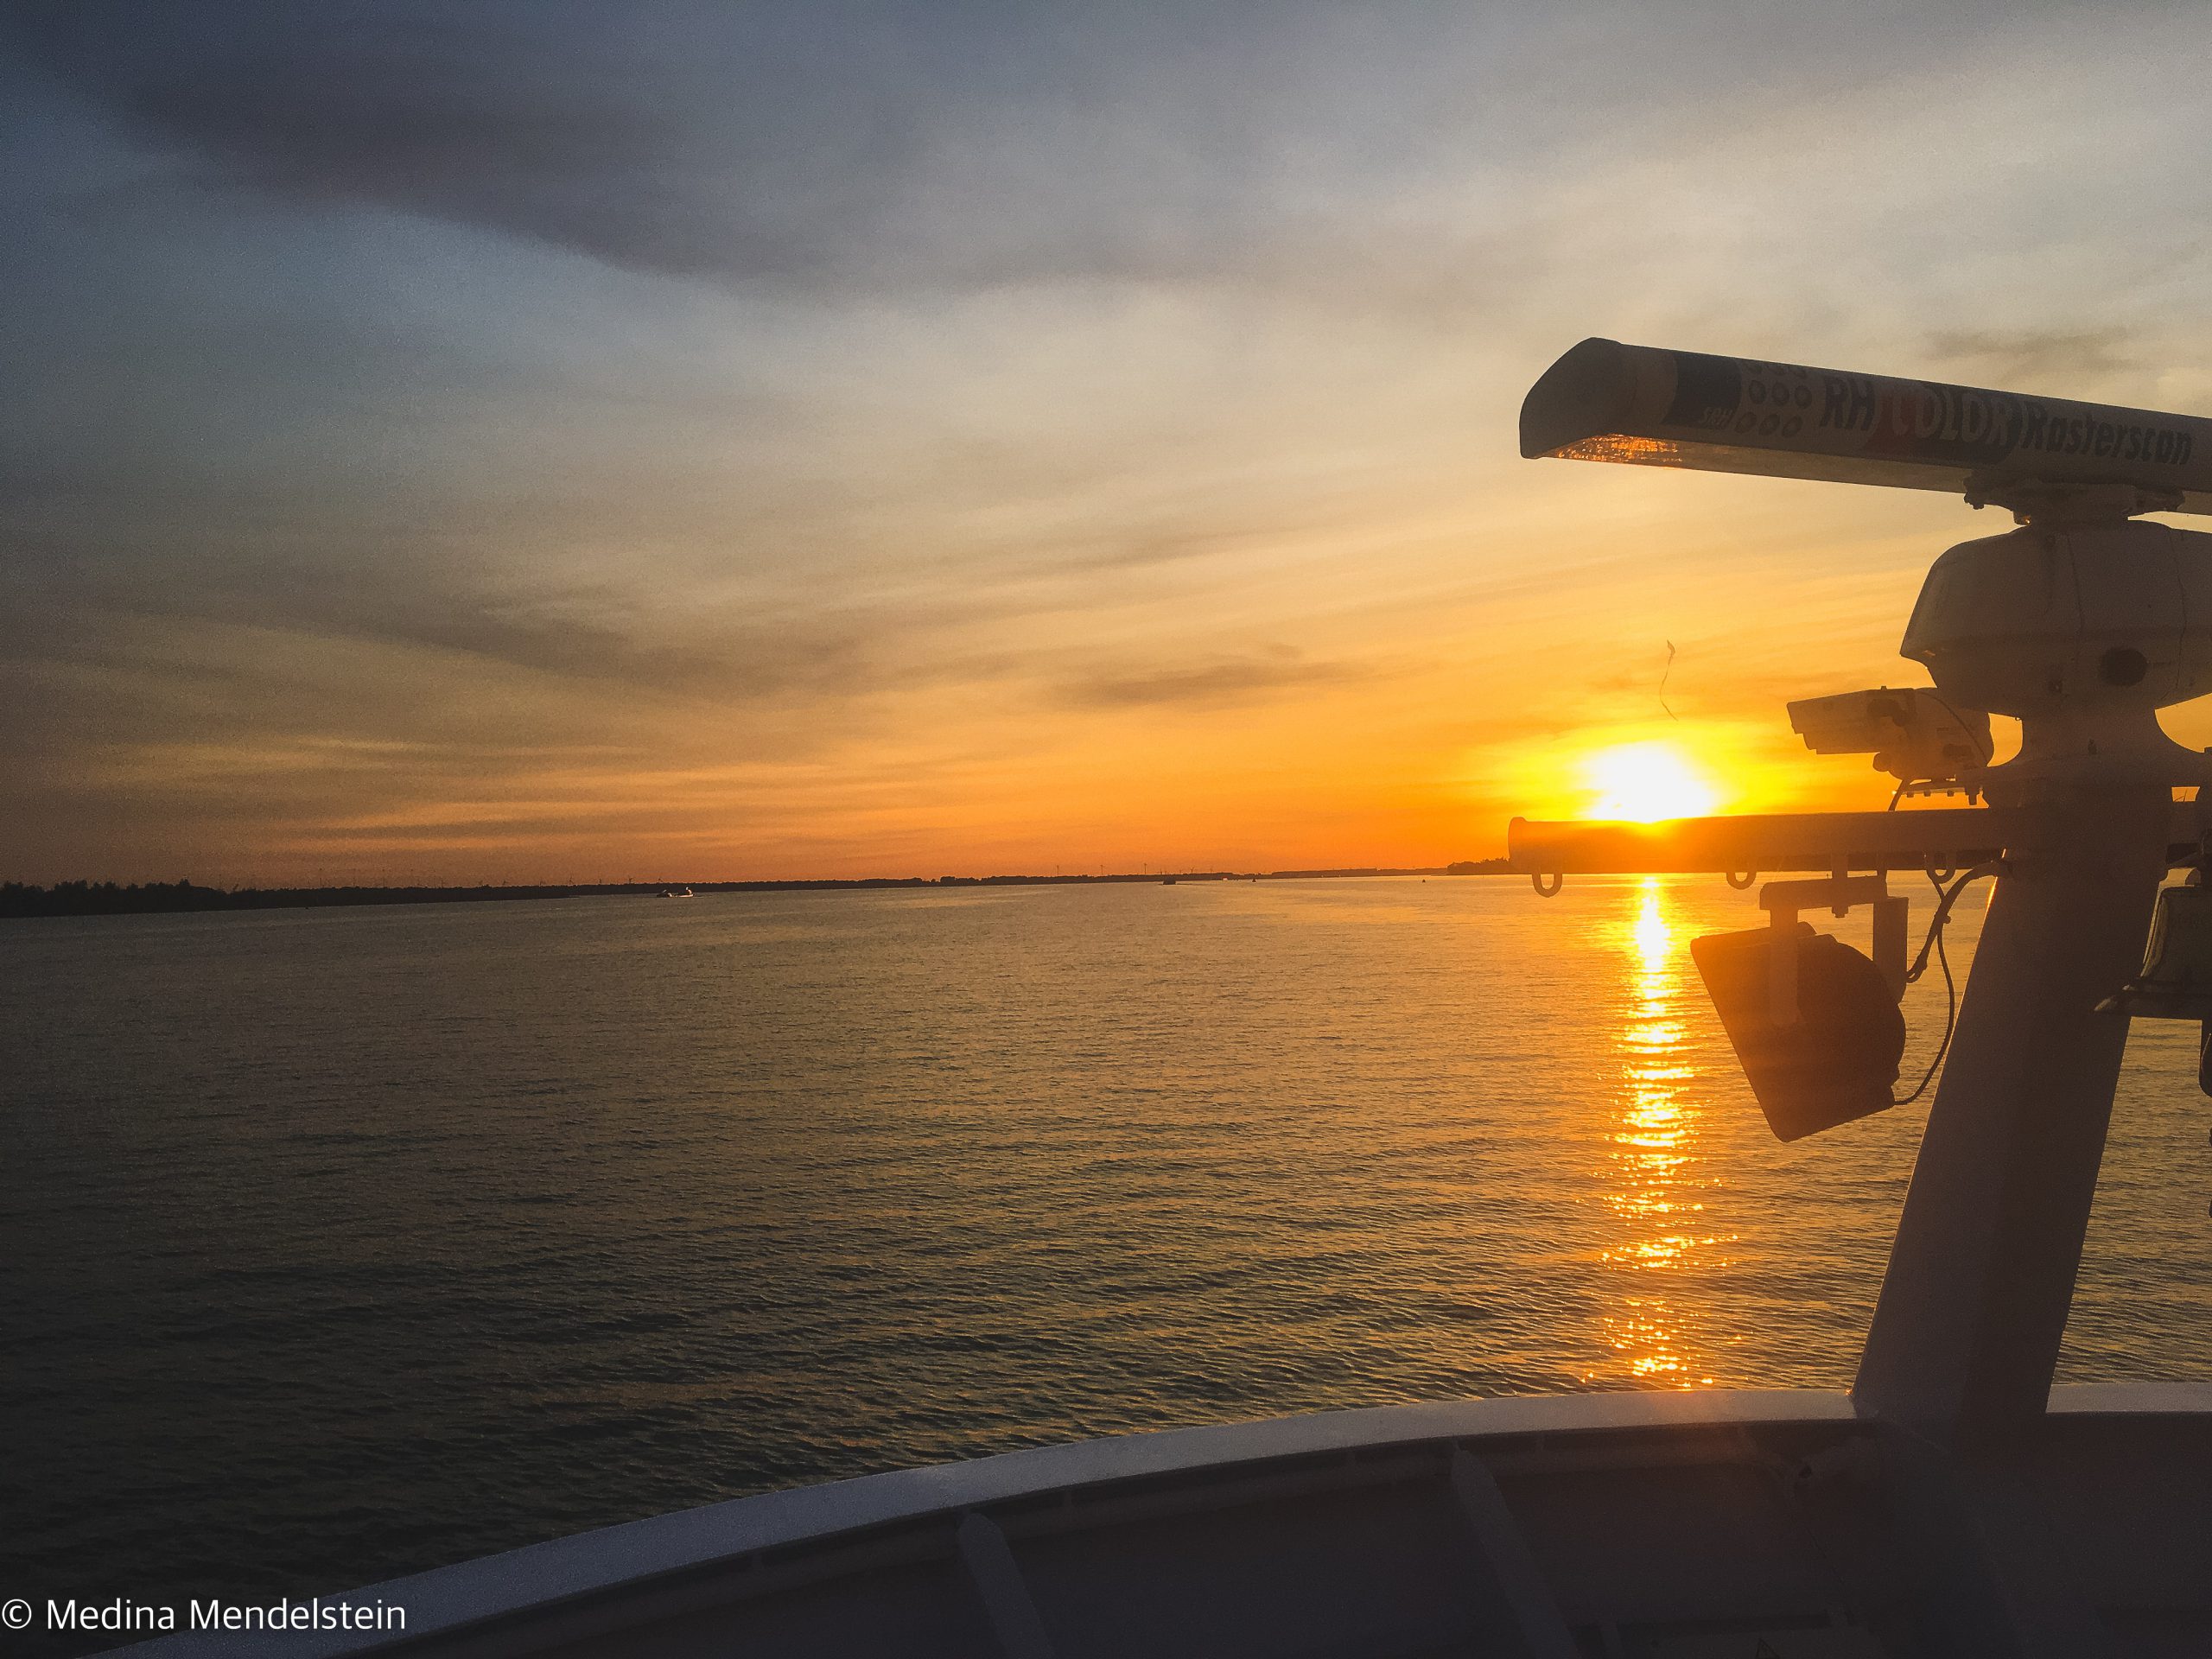 Schifffahrt: Zu sehen ist ein Sonnenuntergang auf dem Wasser, am rechten Rand ist das Radar von einem Flusskreuzfahrtschiff zu sehen.